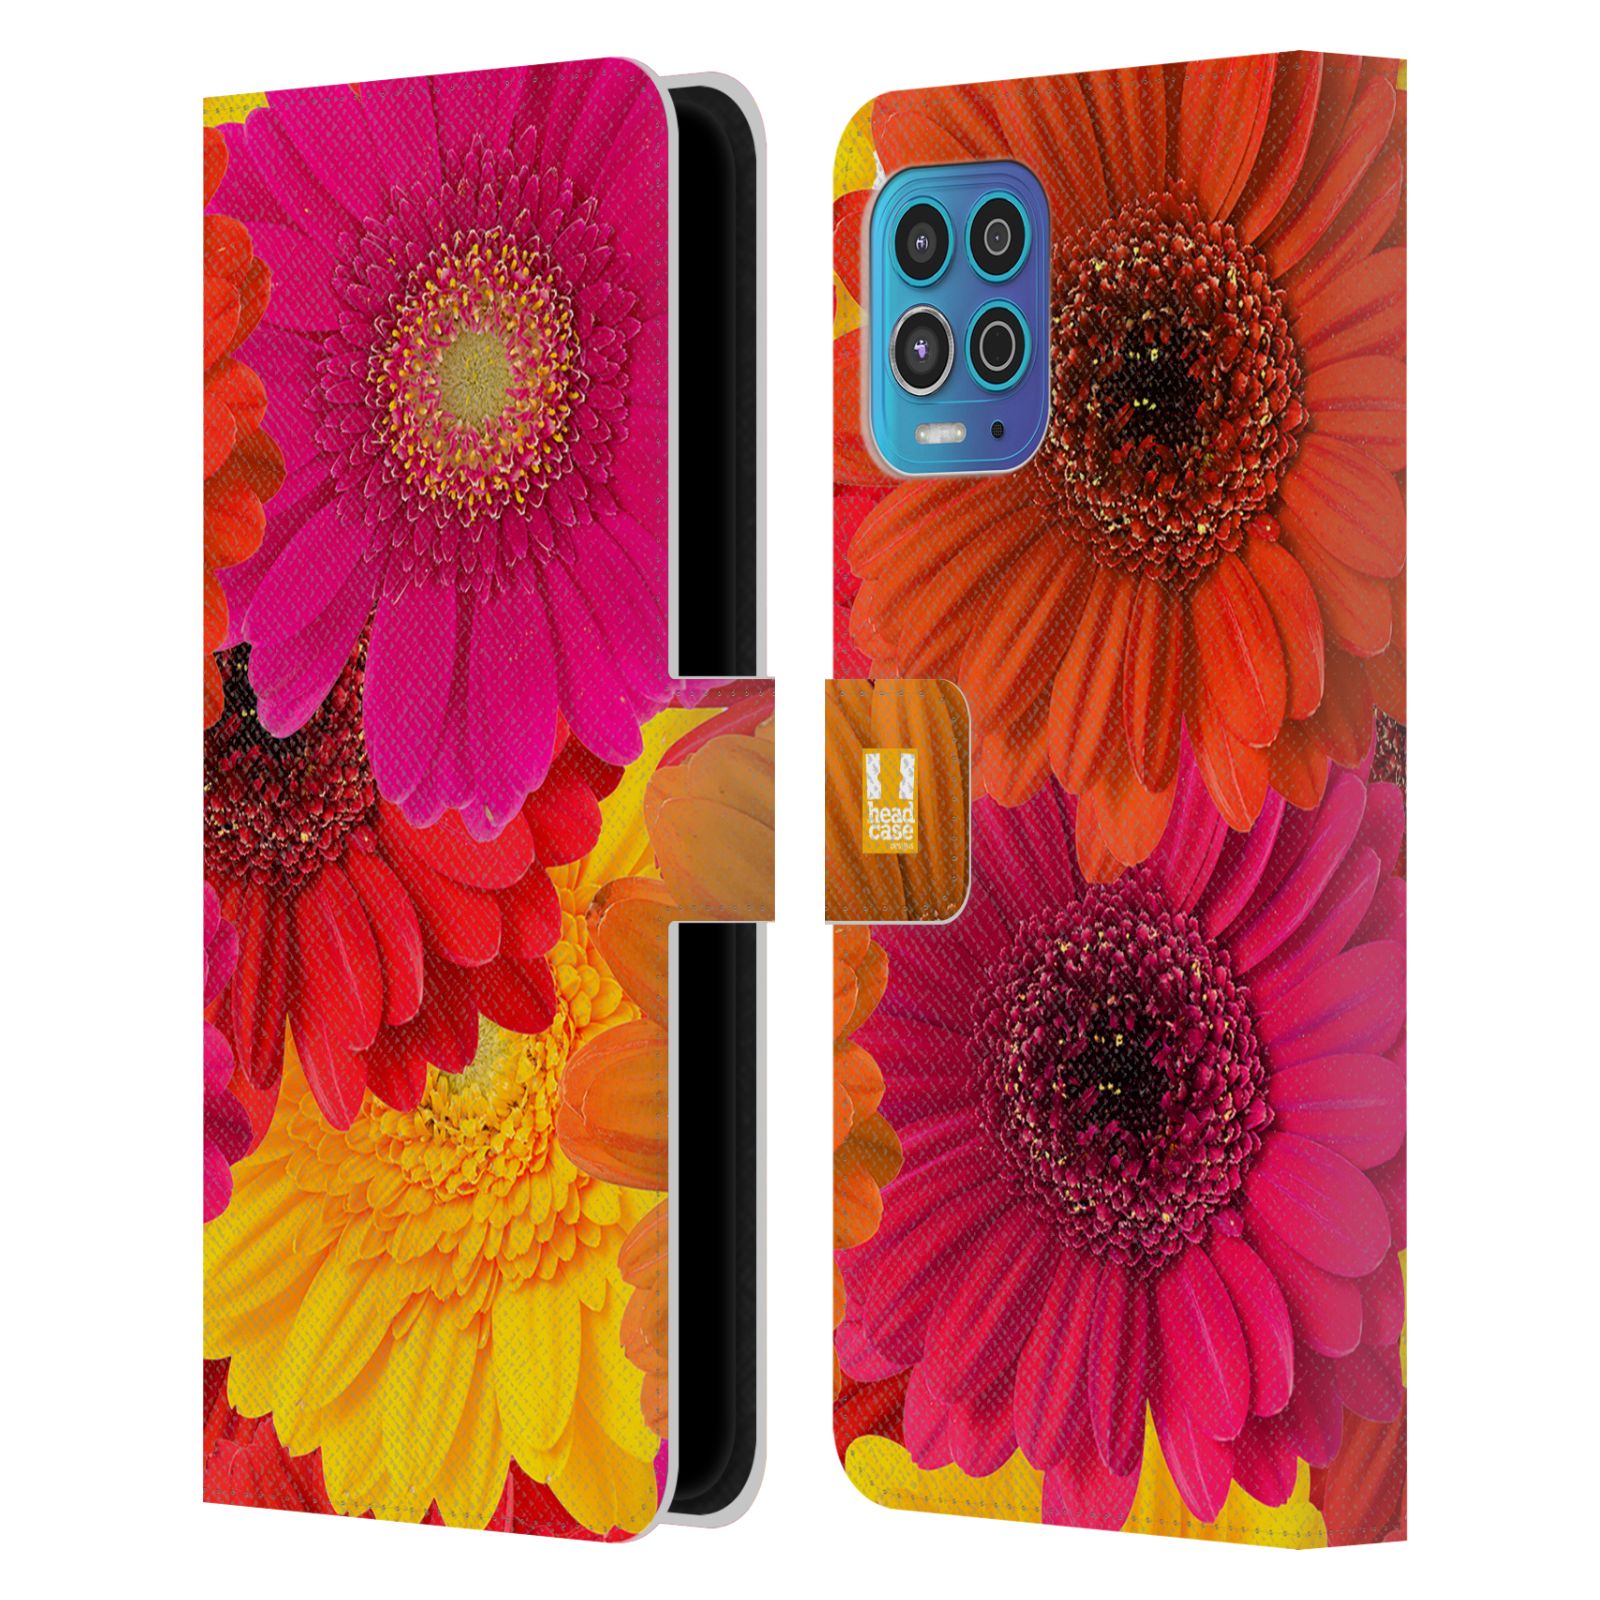 Pouzdro HEAD CASE na mobil Motorola MOTO G100 květy foto fialová, oranžová GERBERA